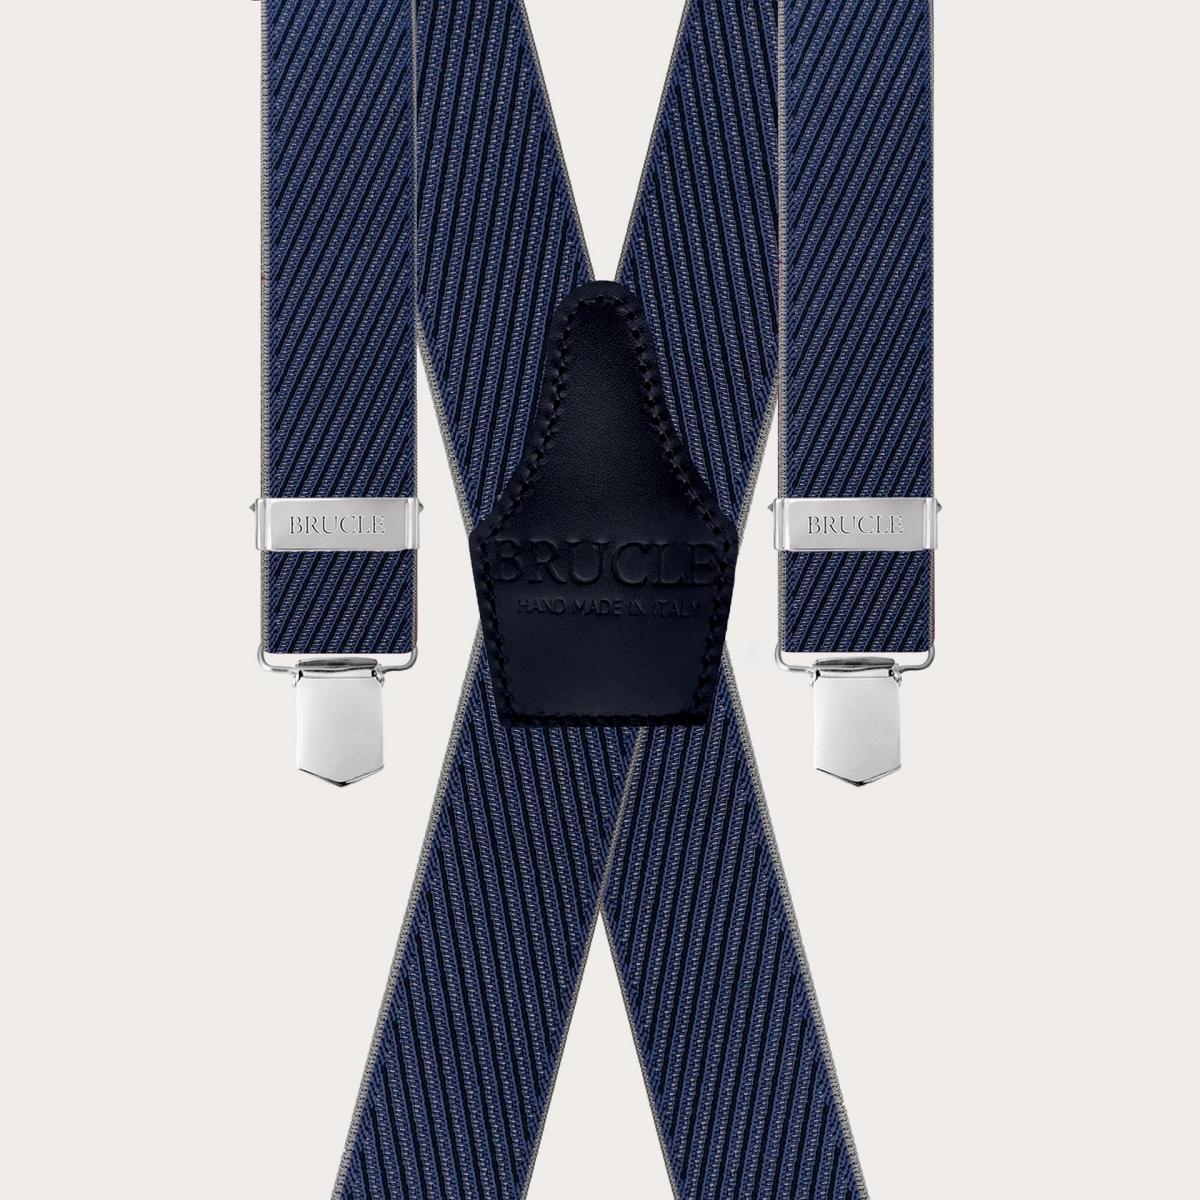 Elegante Herrenhosenträger mit diagonalen blauen und grauen Streifen in X-Form, nur mit Clips